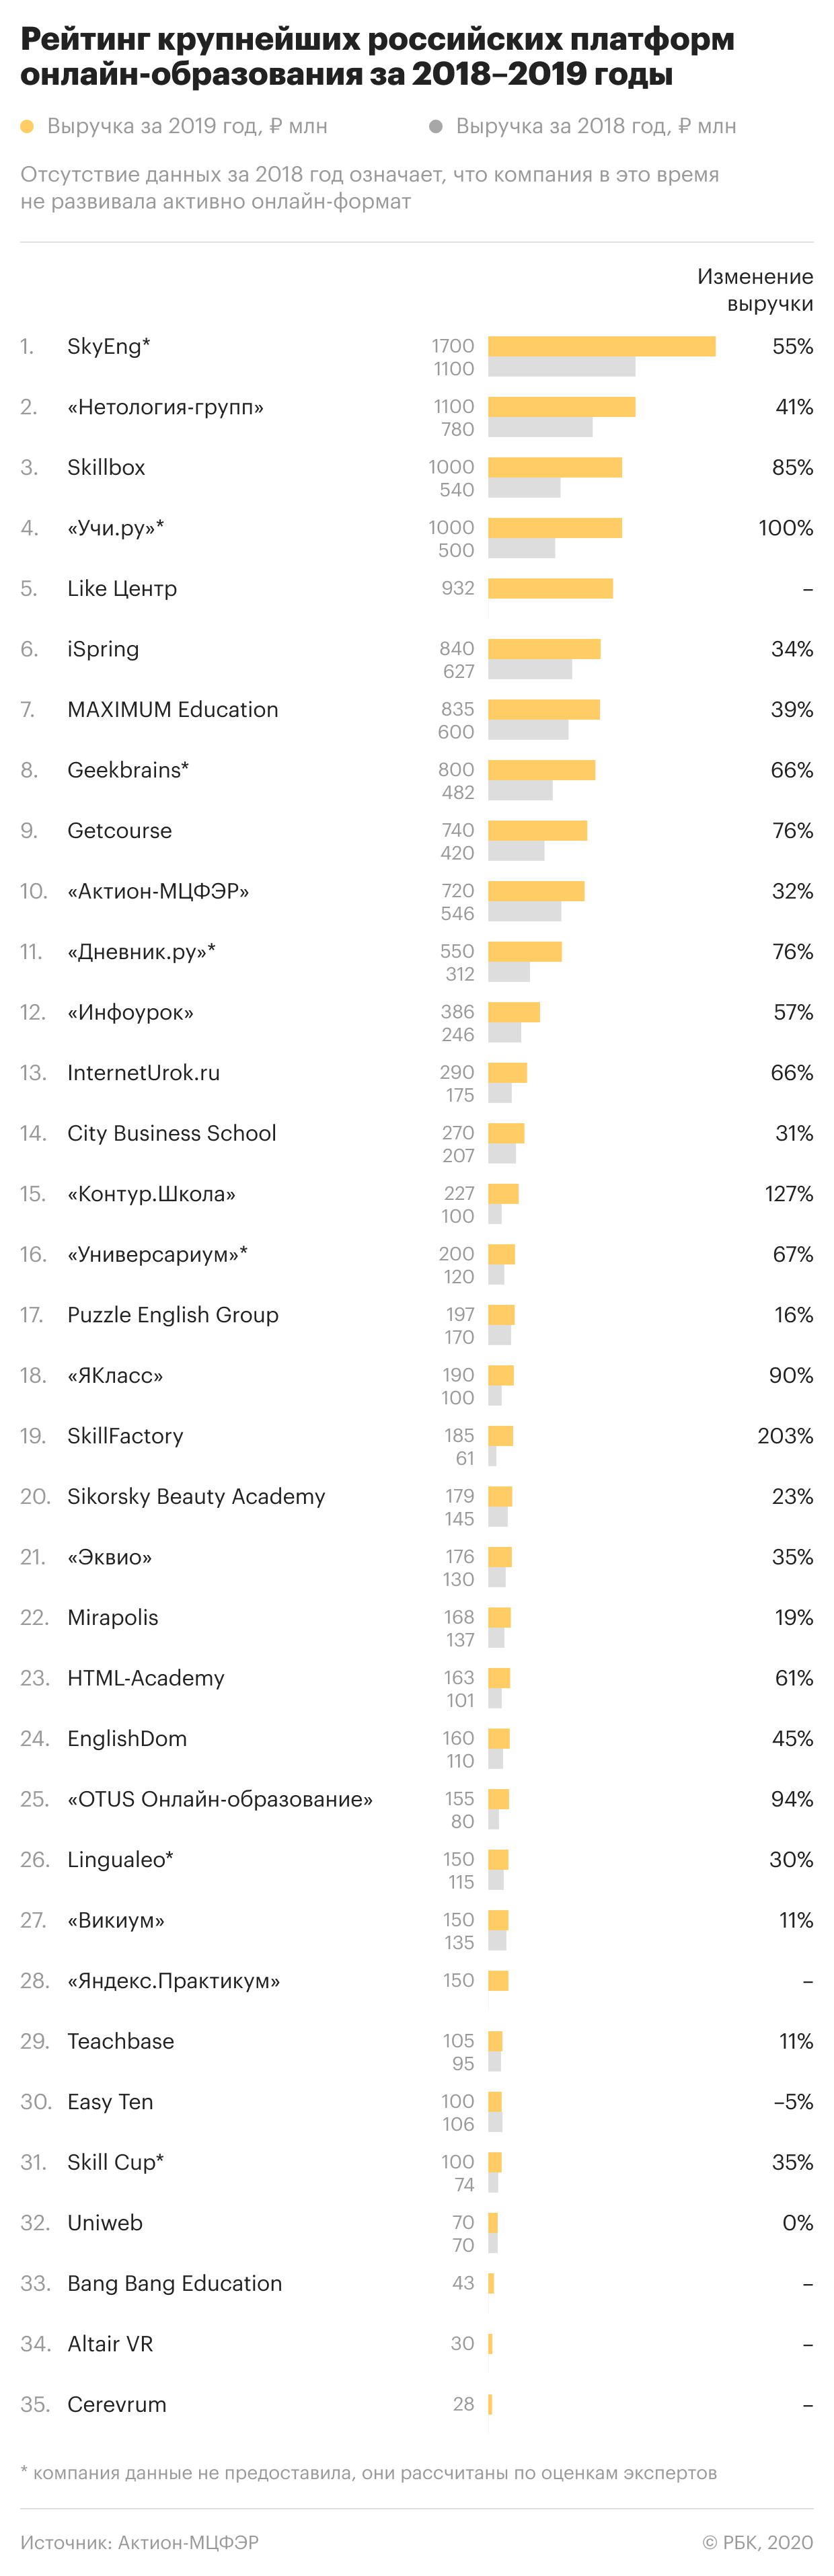 Тренды образования: кто вошел в топ-10 крупнейших EdTech-компаний России